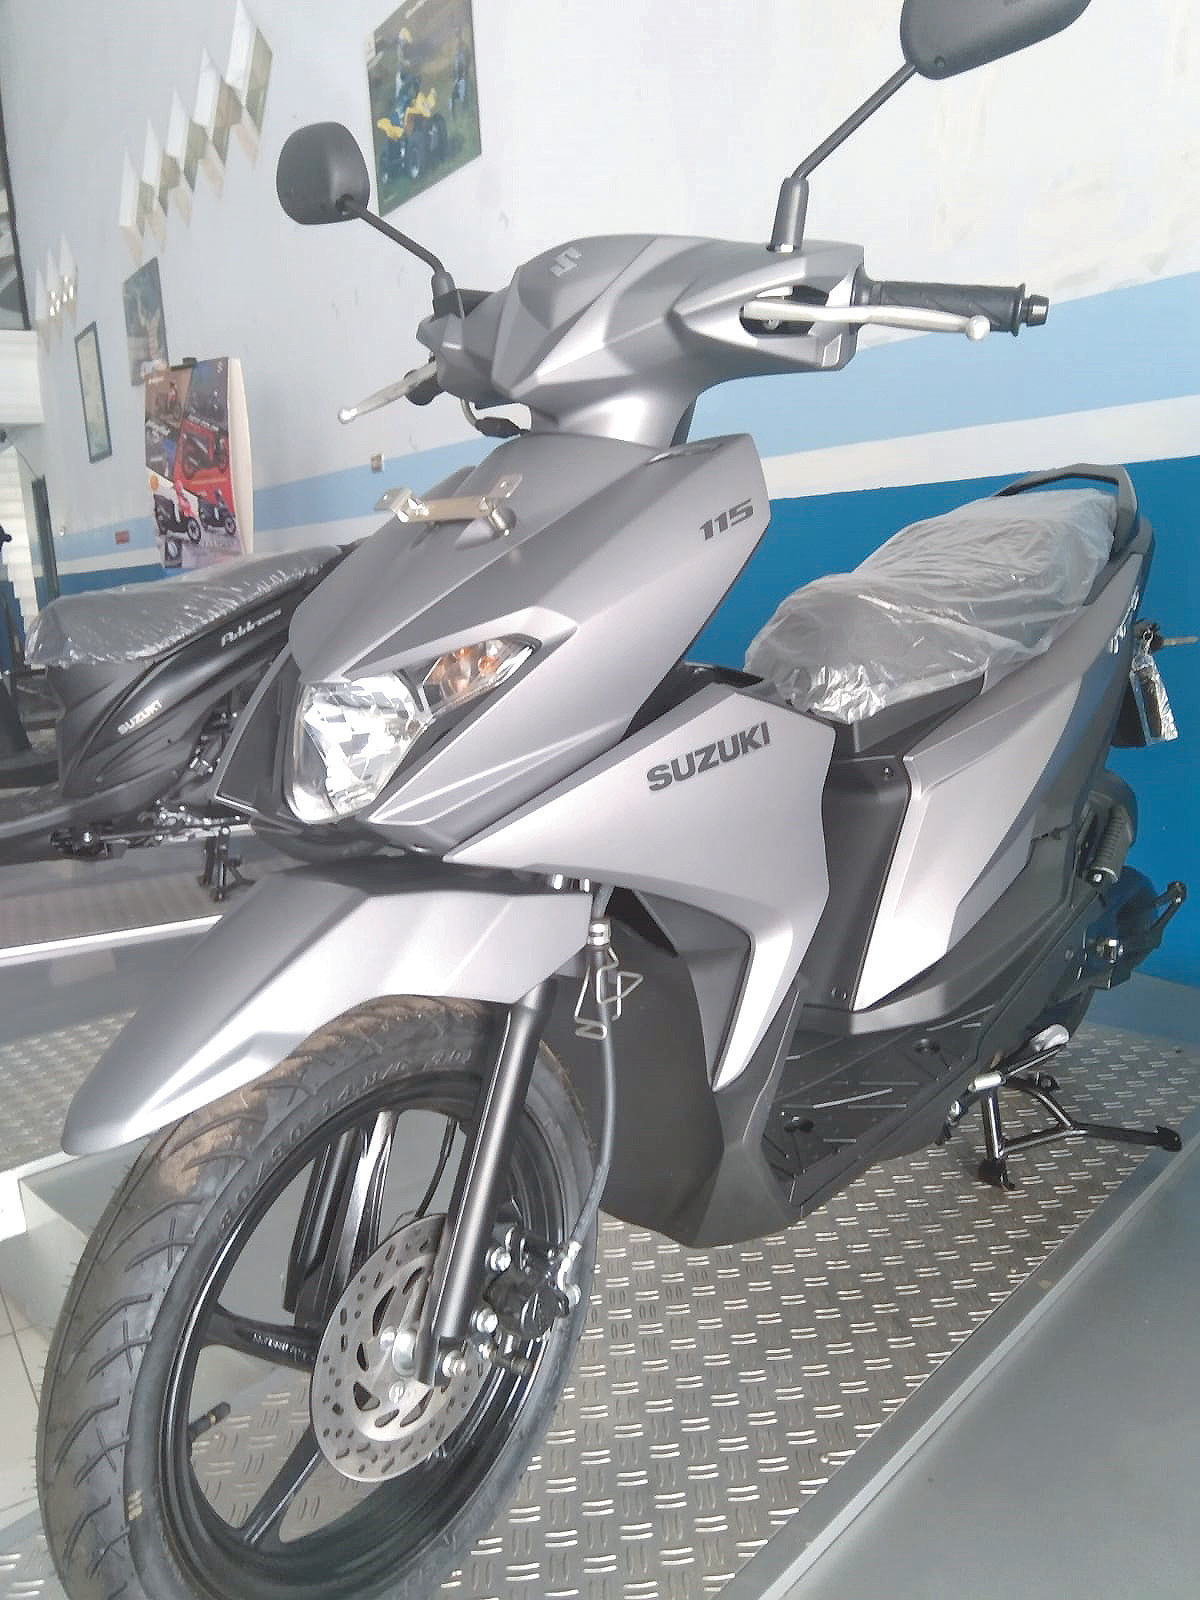 Suzuki Nex II, motor matic yang tampil stylish dengan desain yang modern dan futuristik. (PT SGM FOR KENDARI POS)